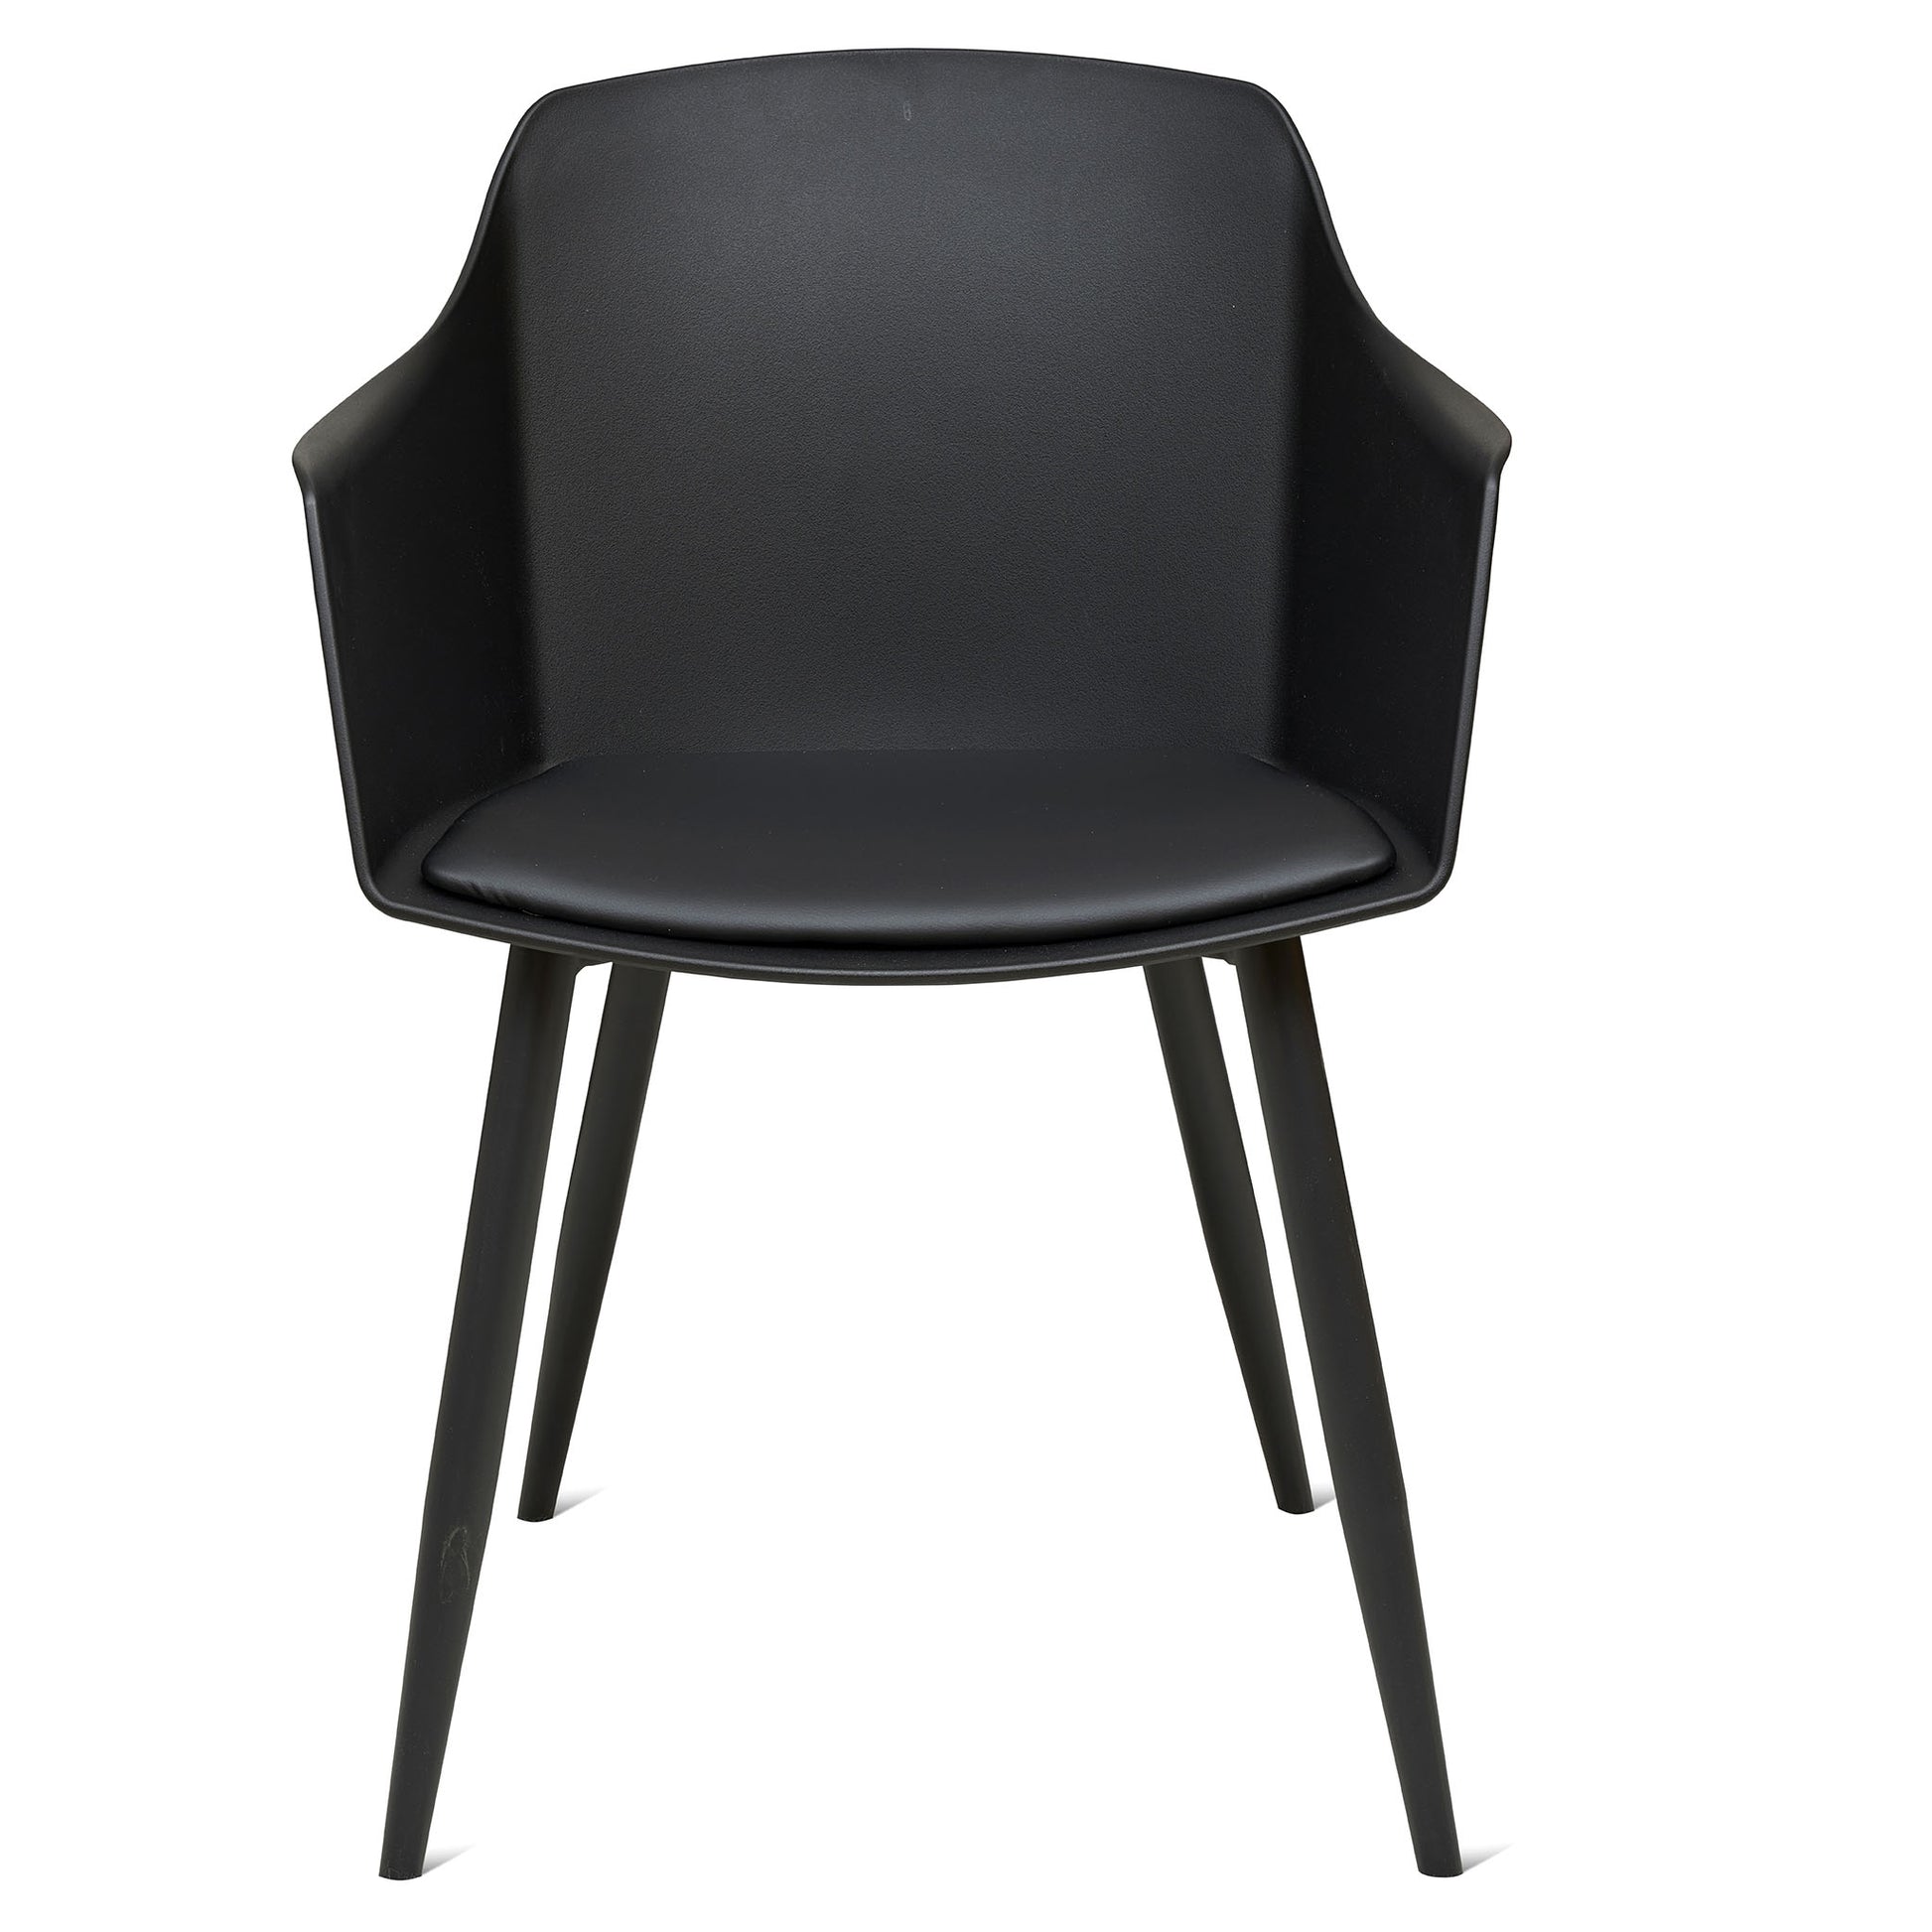 Bra och billig köksstol i svart färg och robust material